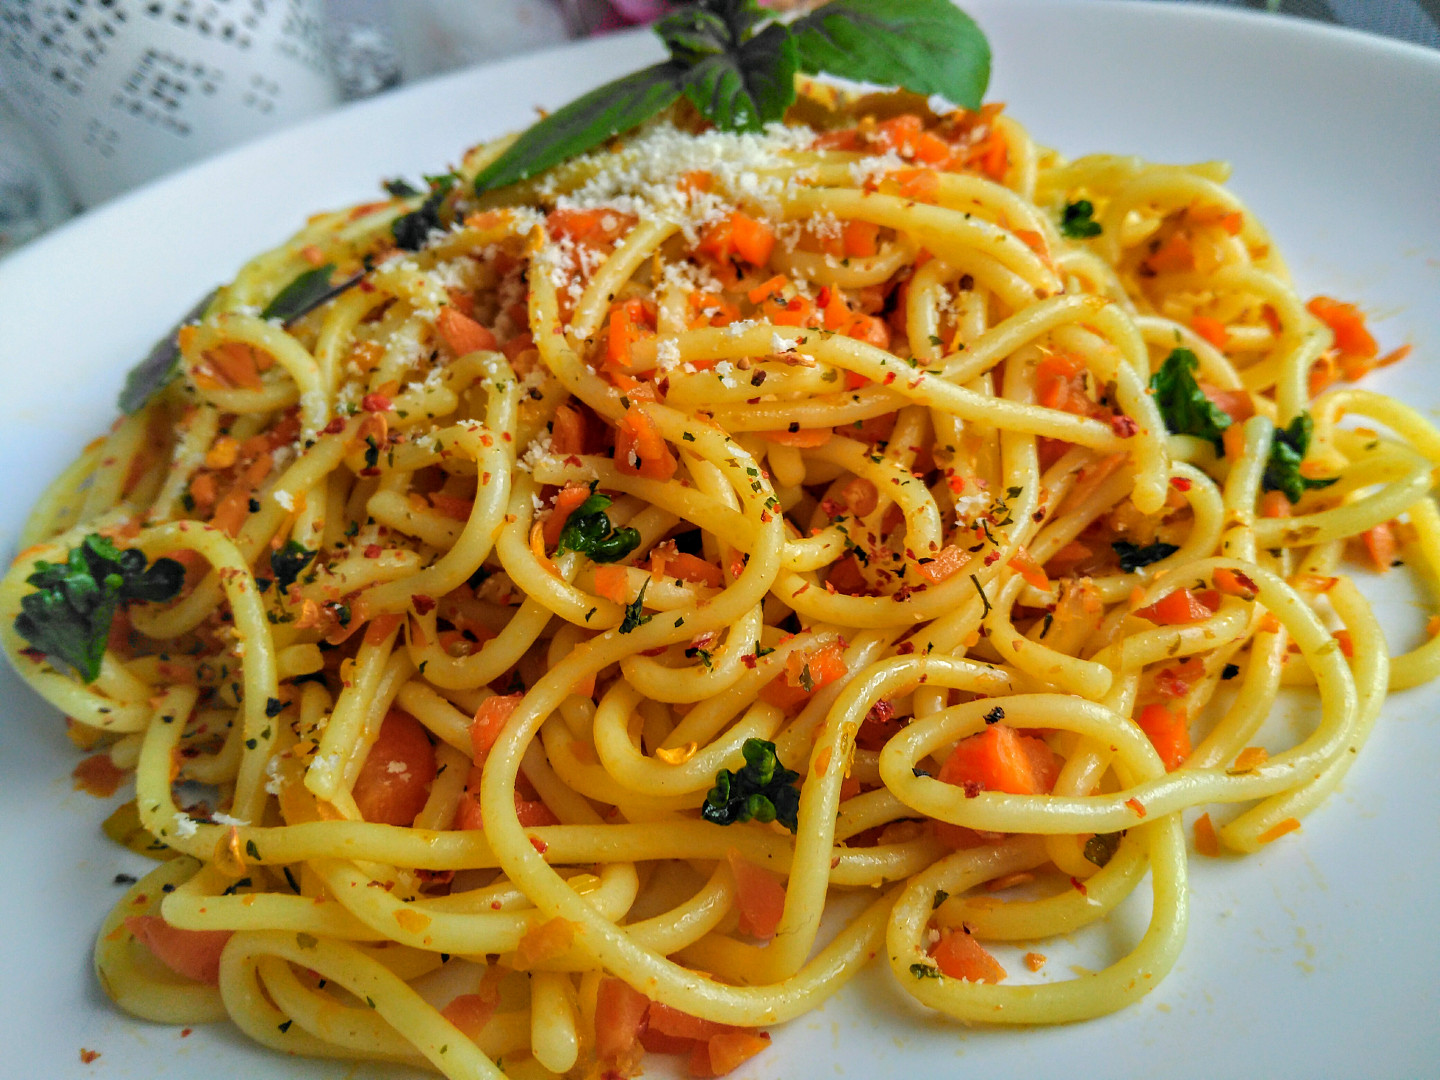 Bezmasá večeře ze špaget, mrkve a papriček